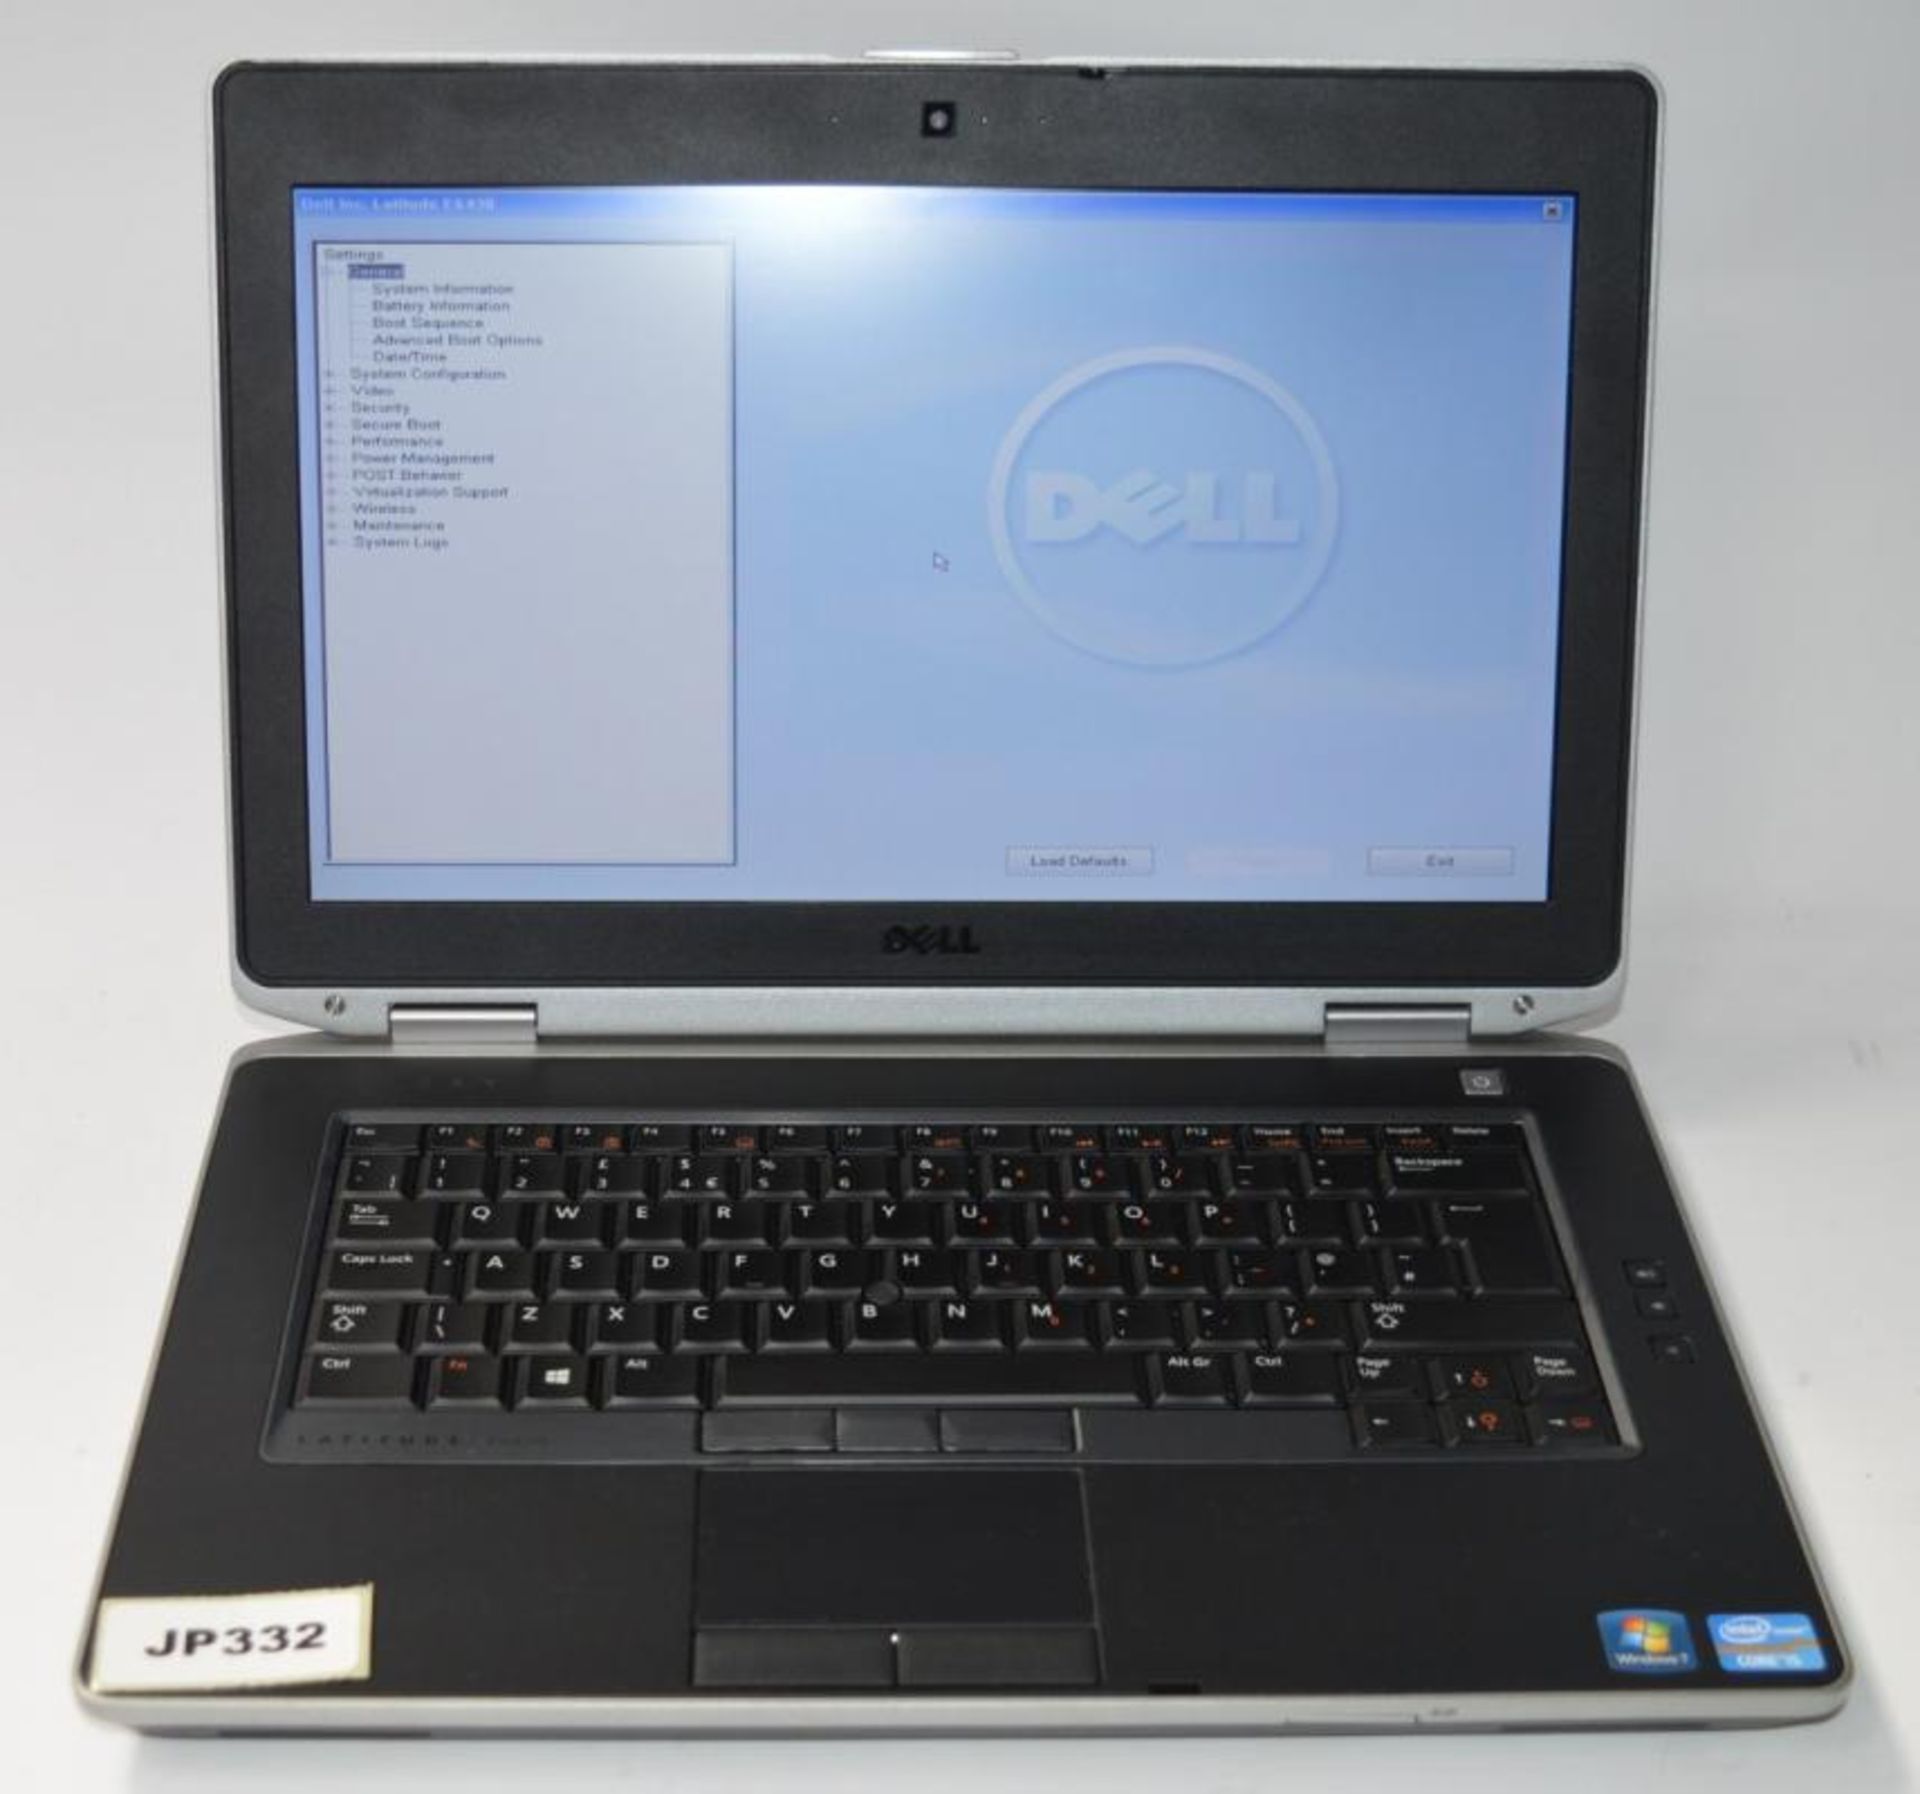 1 x Dell Latitude E6430 Laptop Computer - 14 Inch Screen - Features Intel Core i5 2.6ghz Processor a